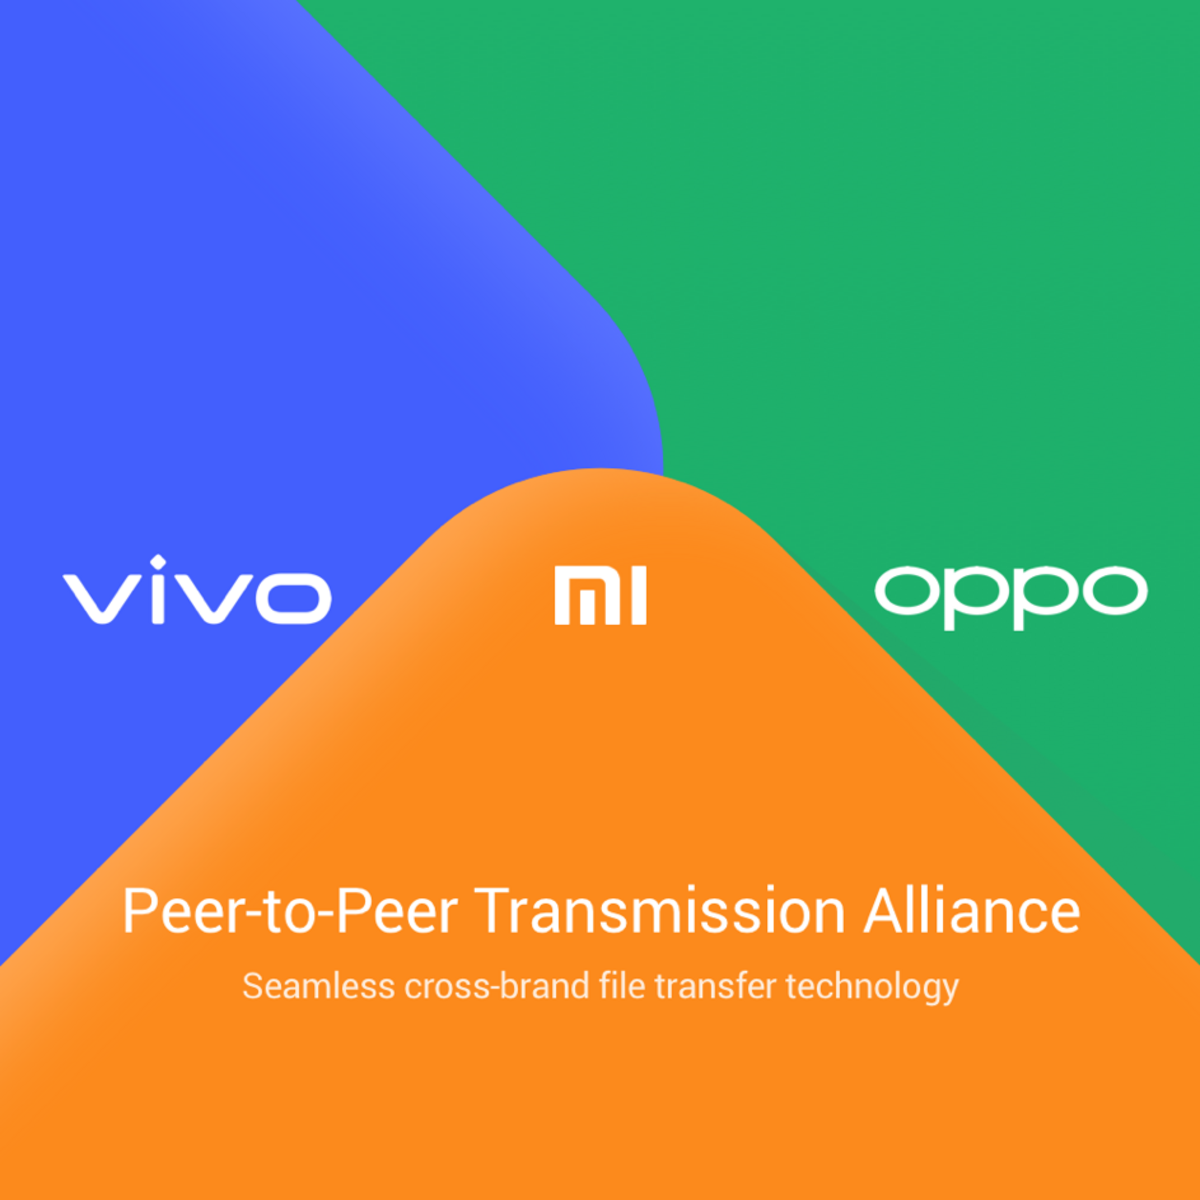 Xiaomi impreuna cu OPPO si Vivo dezvolta un nou sistem inovator de transfer de fisiere